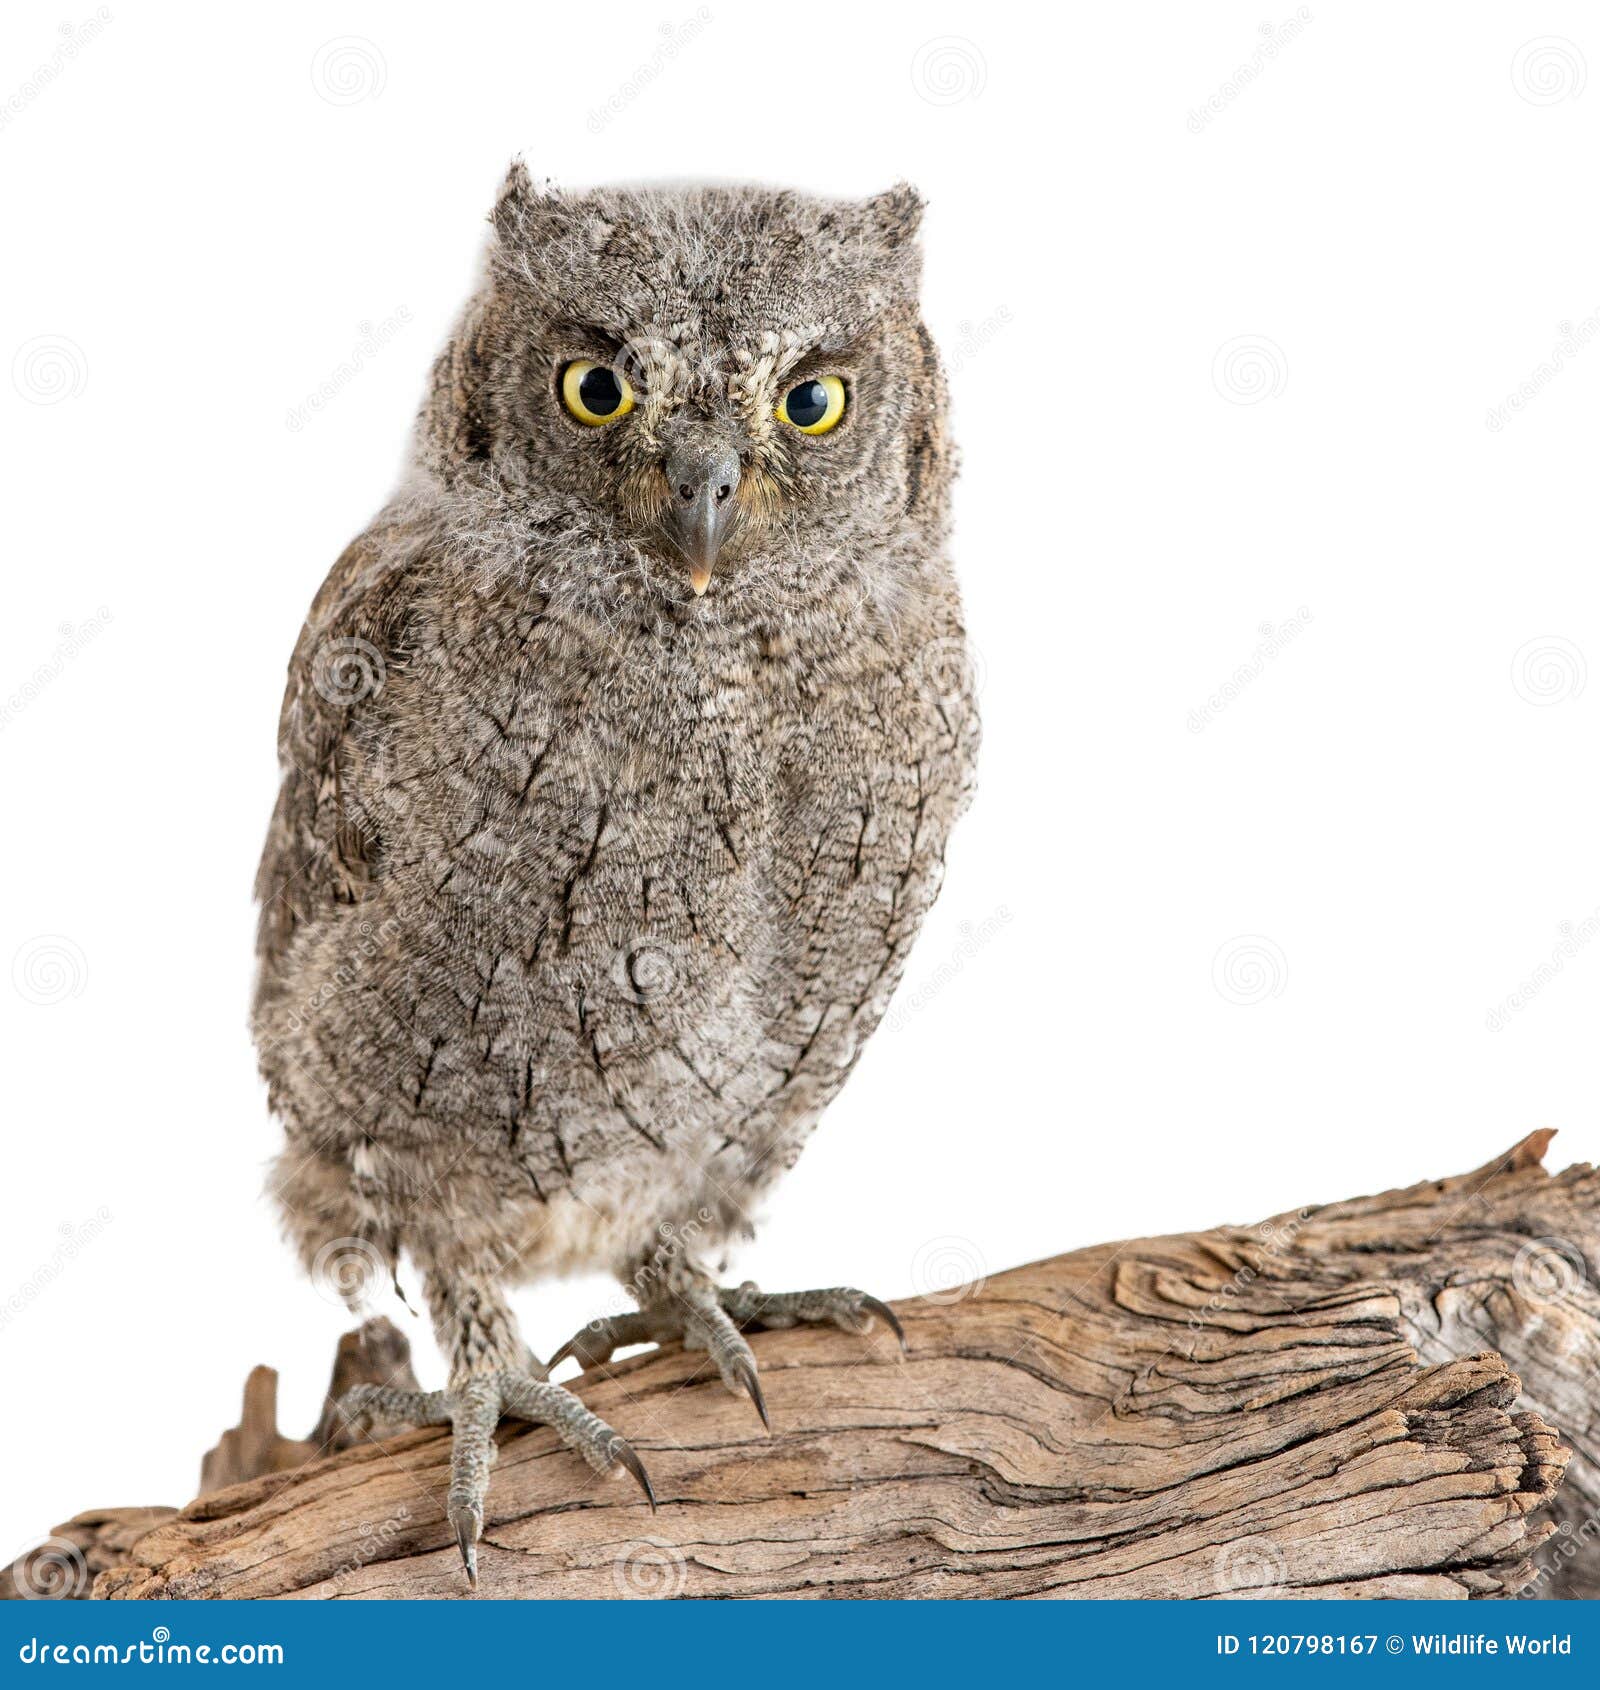 european scops owl otus scops sitting on a stick on white background